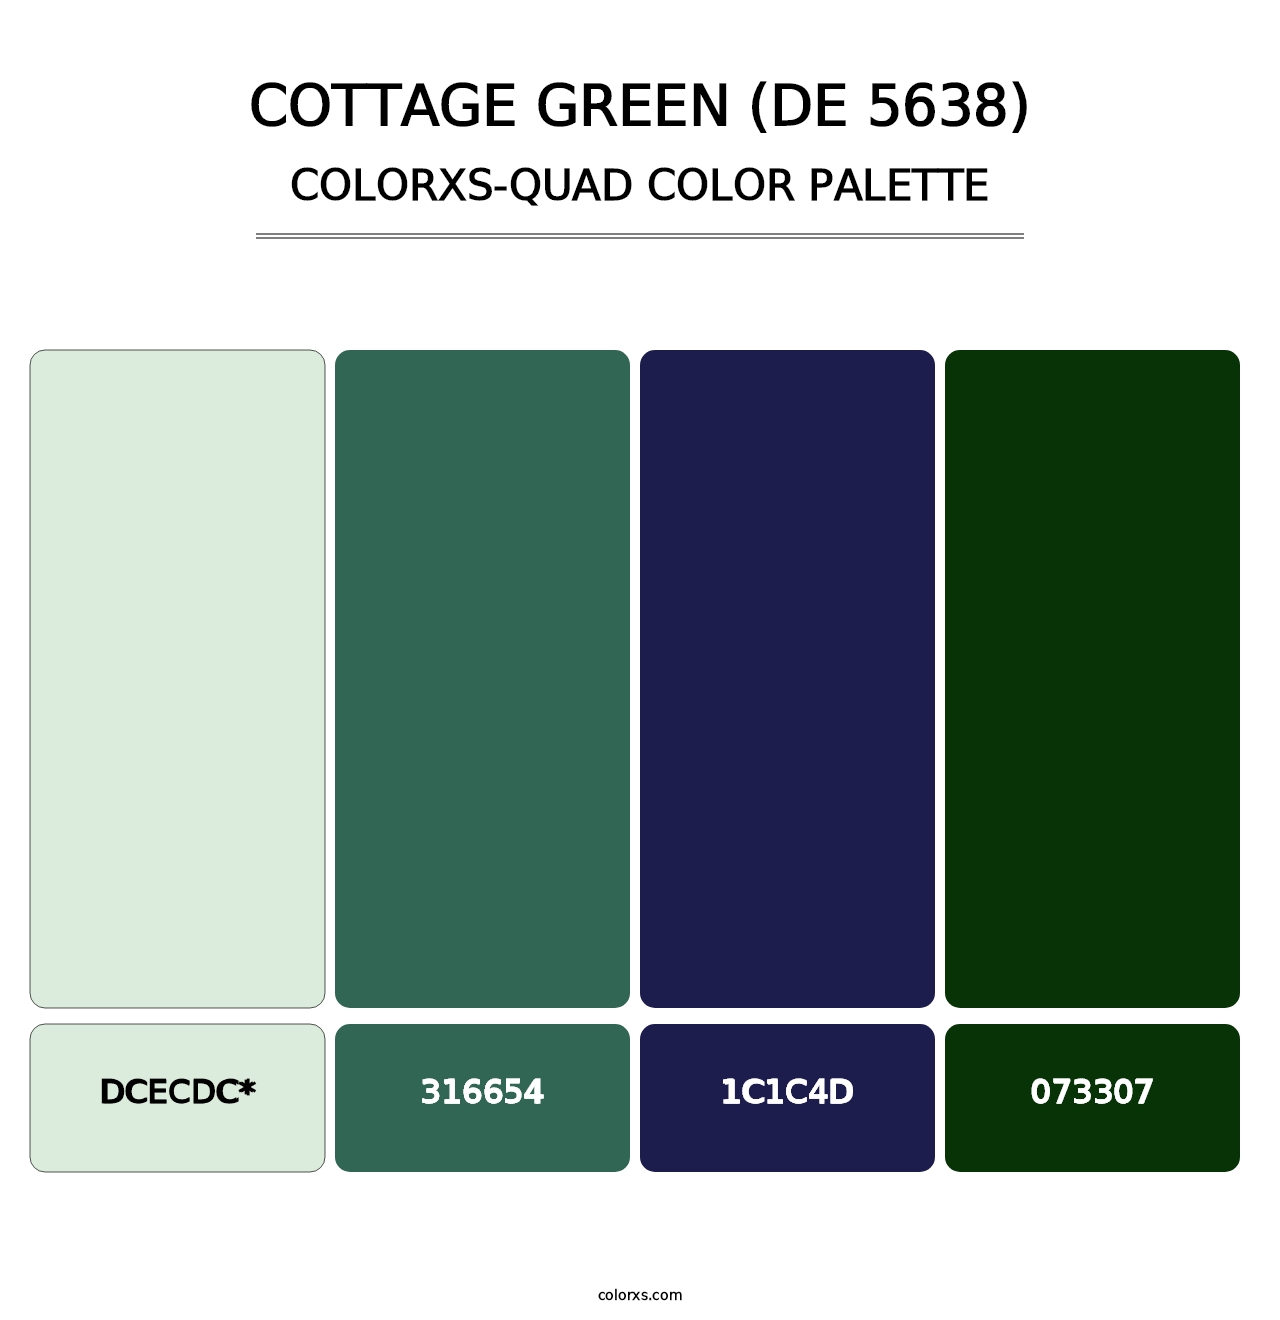 Cottage Green (DE 5638) - Colorxs Quad Palette